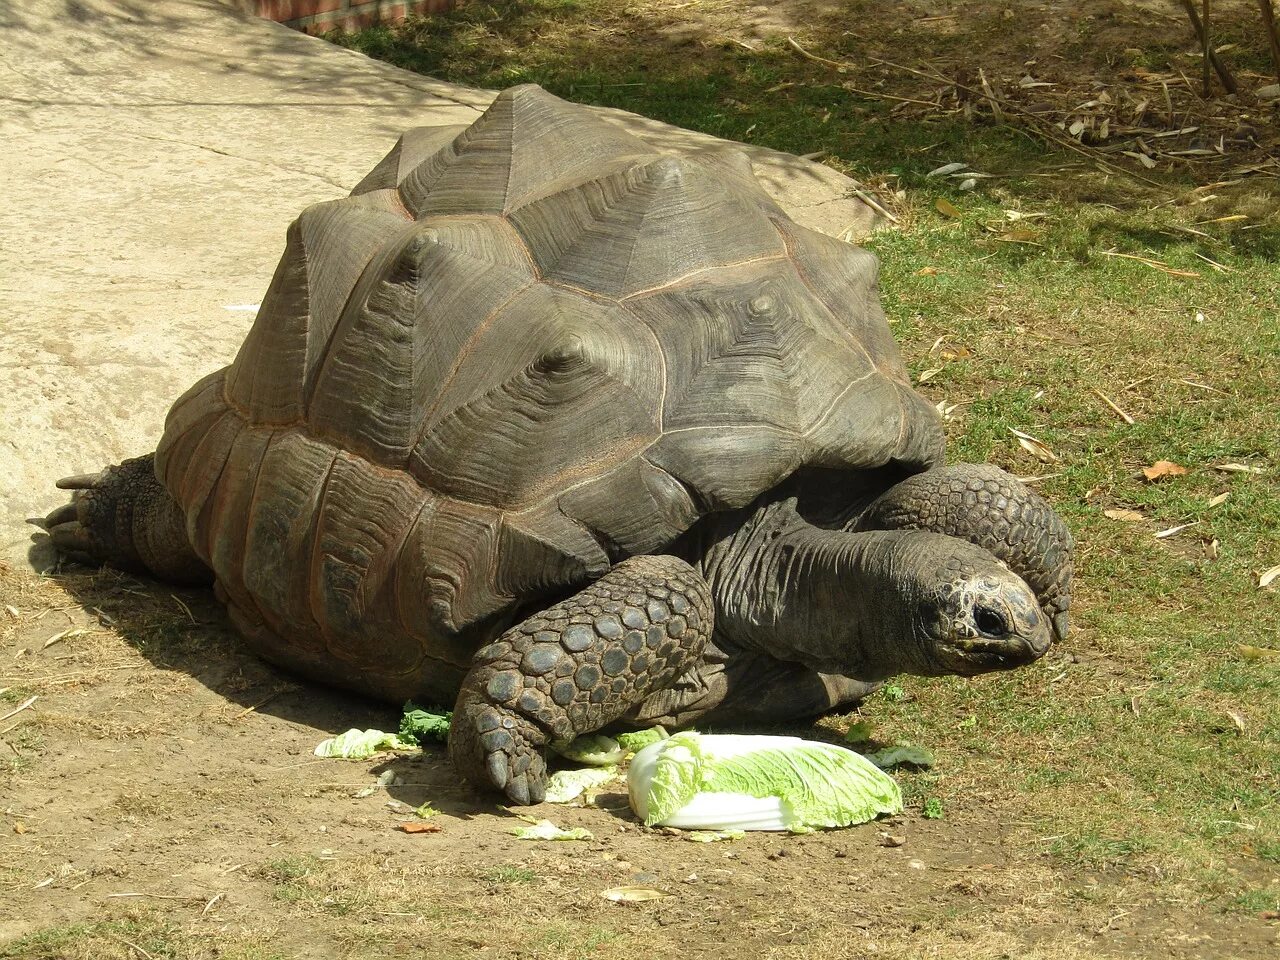 Галапагосская черепаха. Сухопутная черепаха Галапагосы. Галапагосская слоновая черепаха. Гигантская черепаха (Testudo gigantea). Место обитания большой черепахи